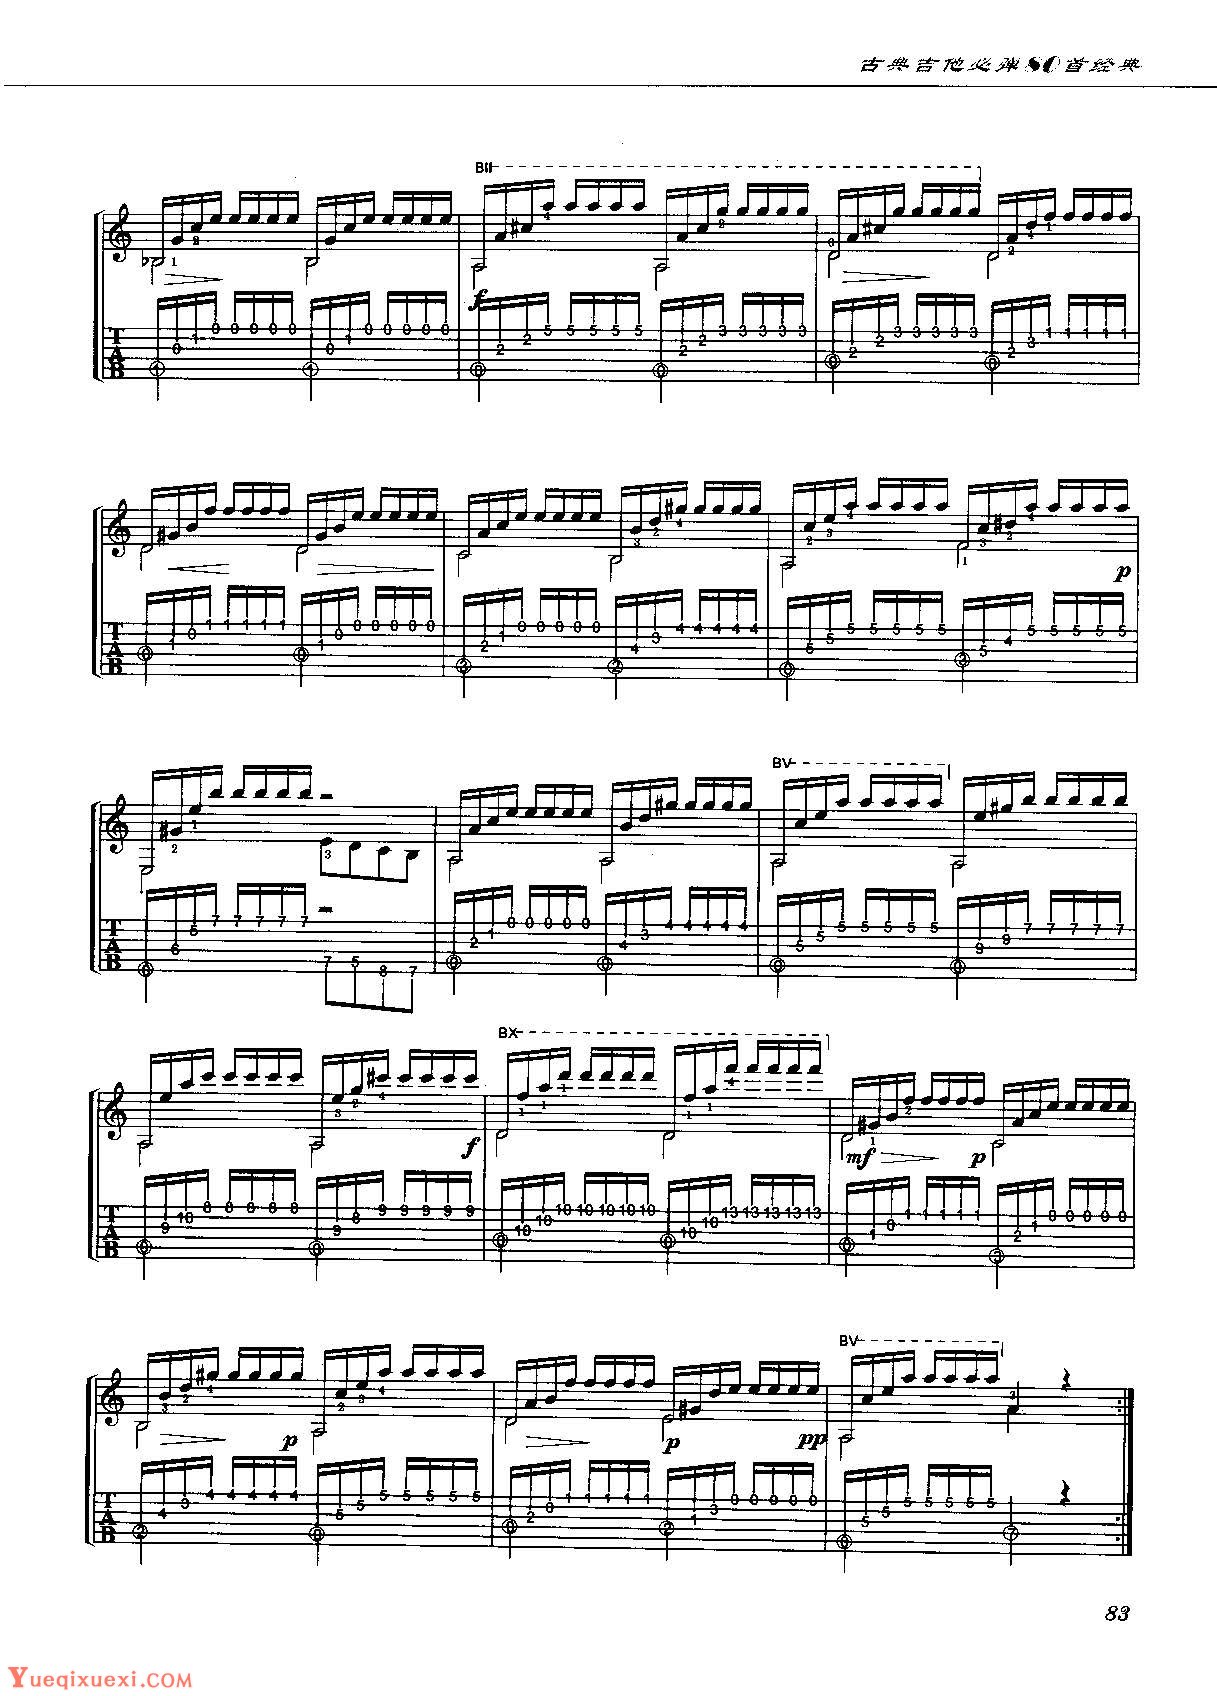 Bach BWV 1004 Chaconne Partita No.2吉他谱(PDF谱,古典吉他,独奏)_罗翔(Steven law)